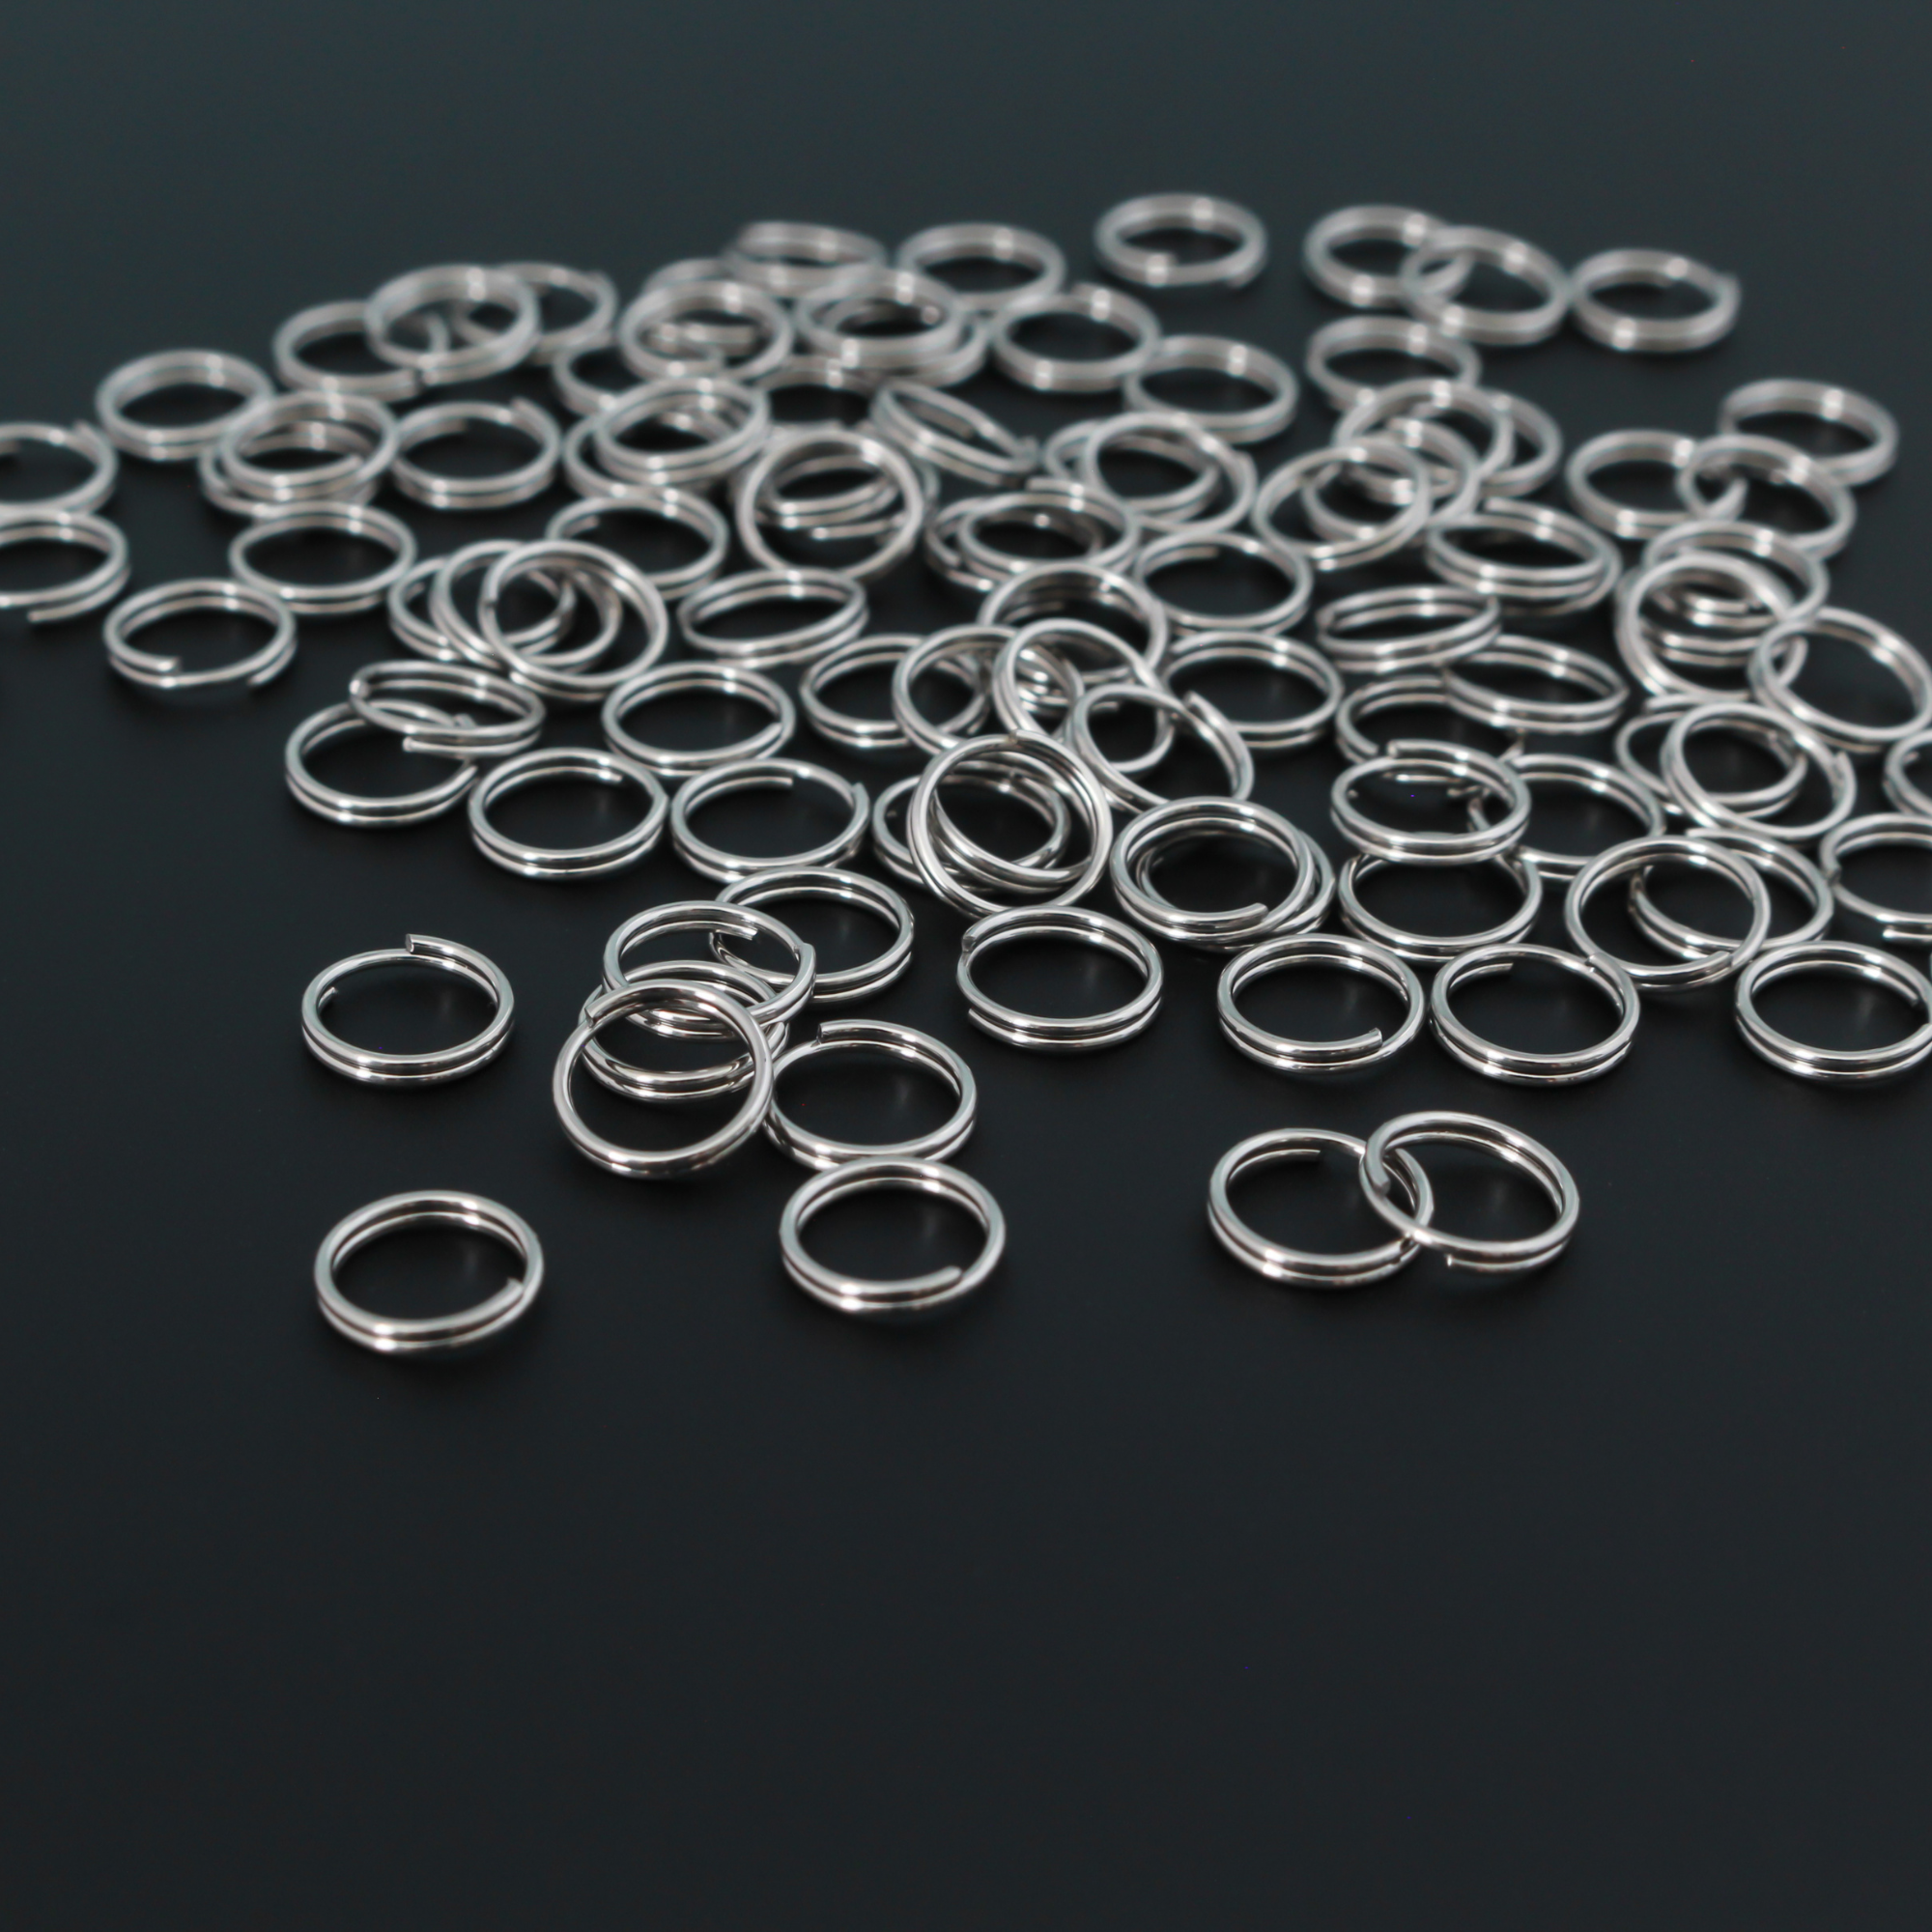 7mm Split Jump Rings - Stainless Steel Double Loop Rings, 100pcs